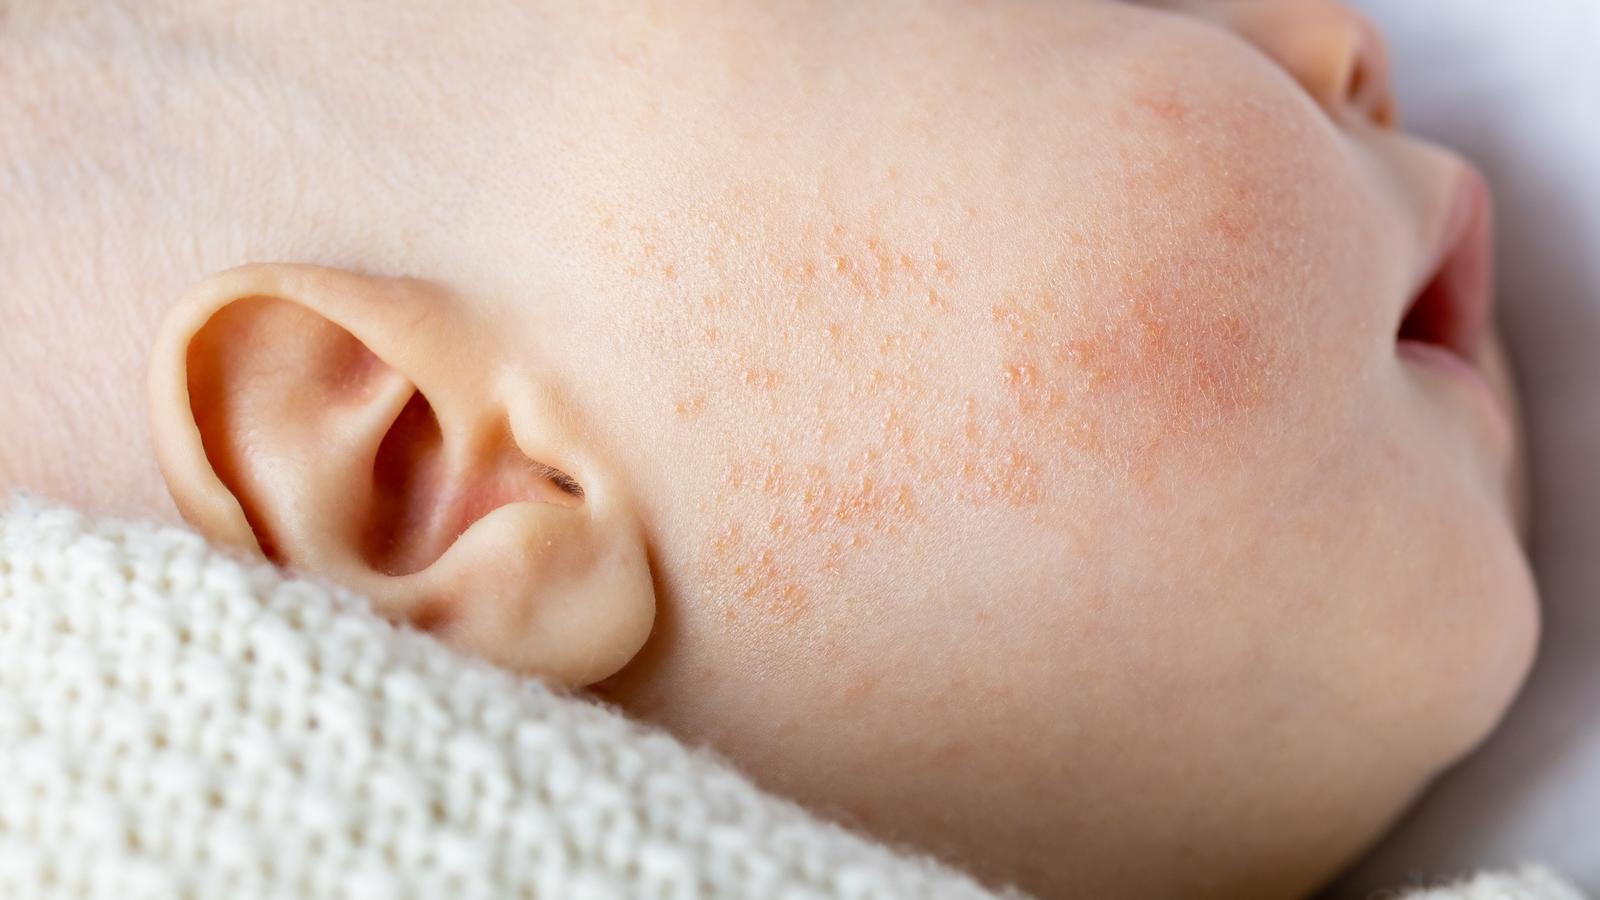 Babyakne auf Haut von Neugeborenen